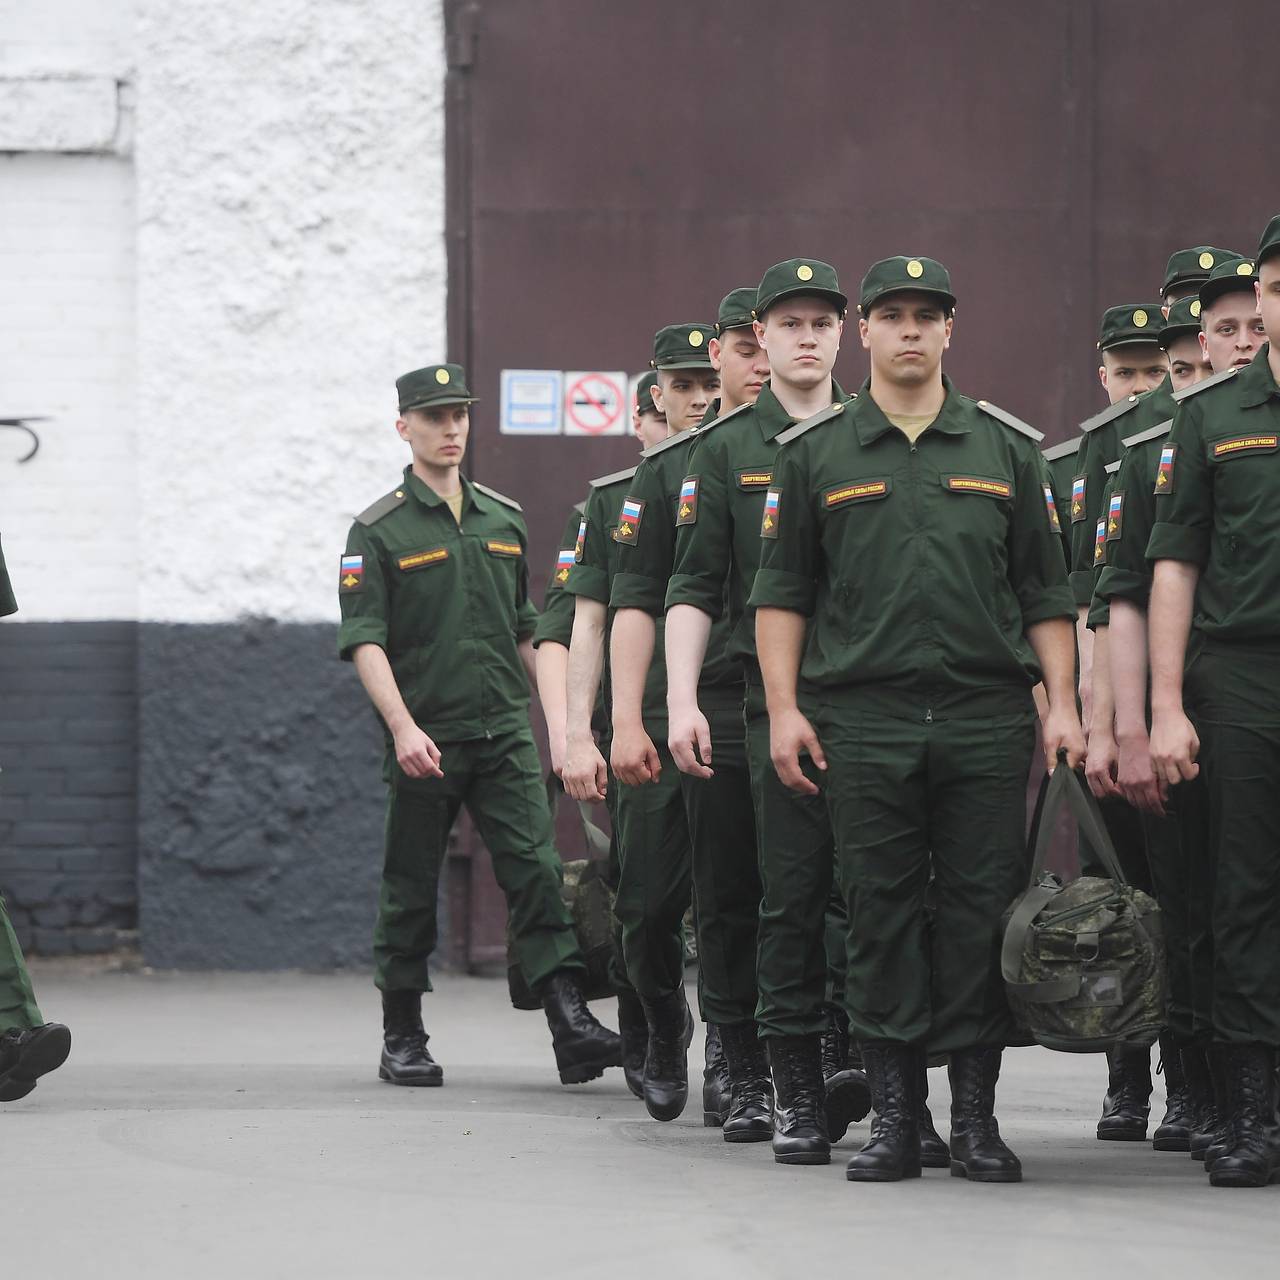 Армии нужны умные и сильные | г. Новочебоксарск Чувашской Республики